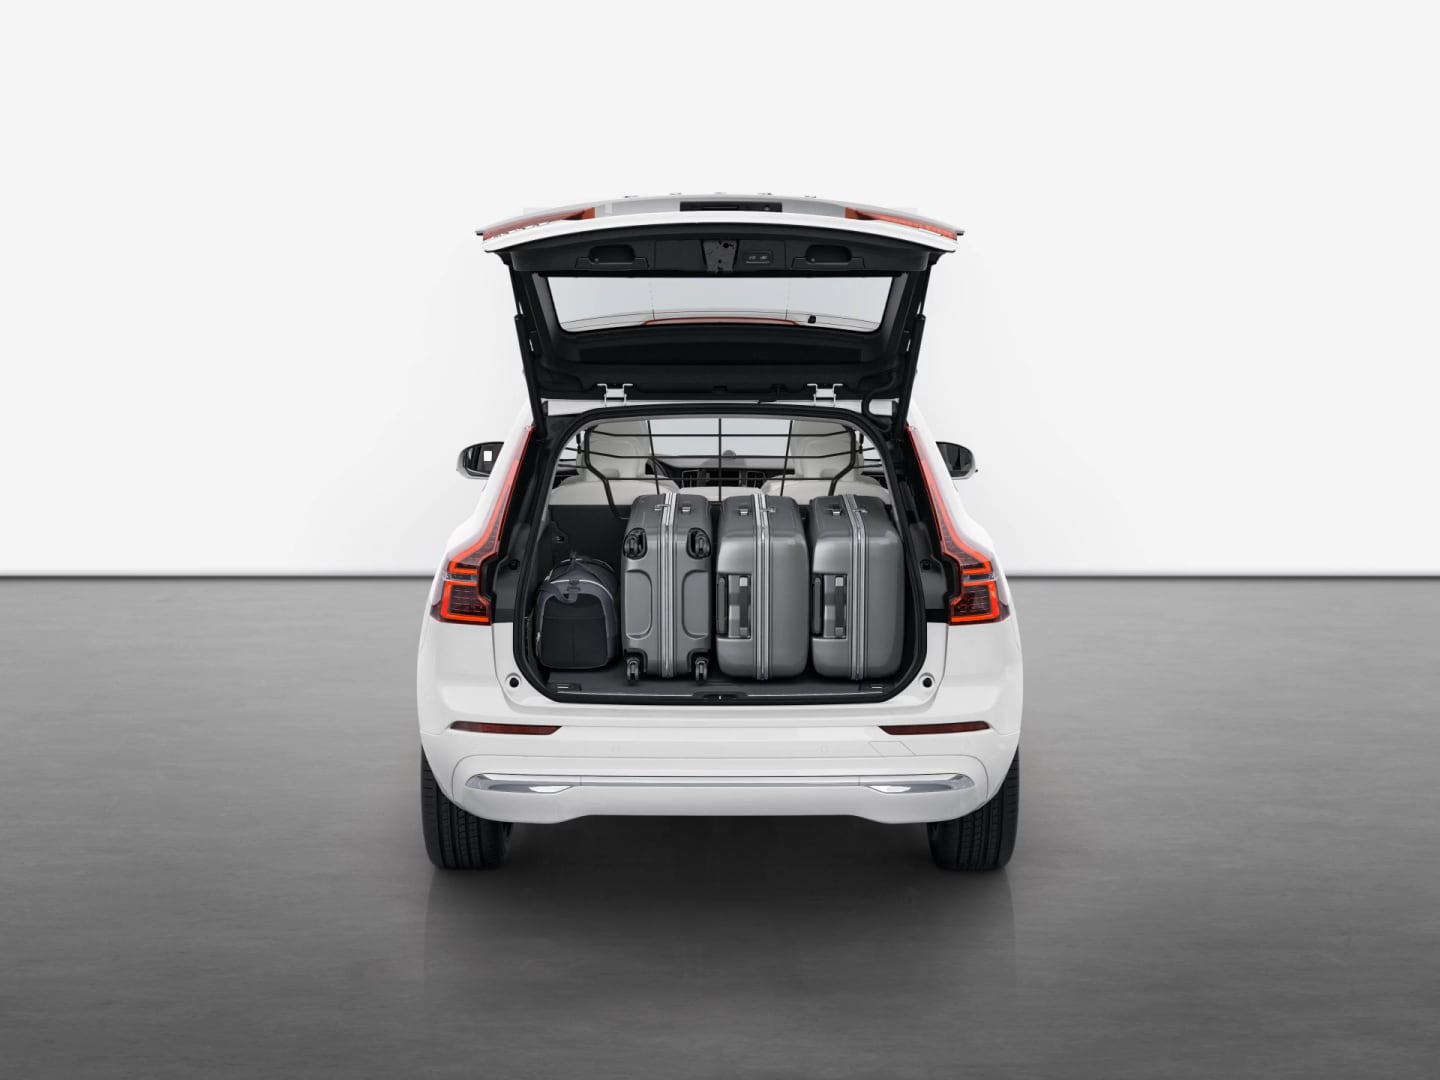 Vista trasera del Volvo XC60 híbrido enchufable con el maletero abierto, donde se ve la cantidad de equipaje que cabe.